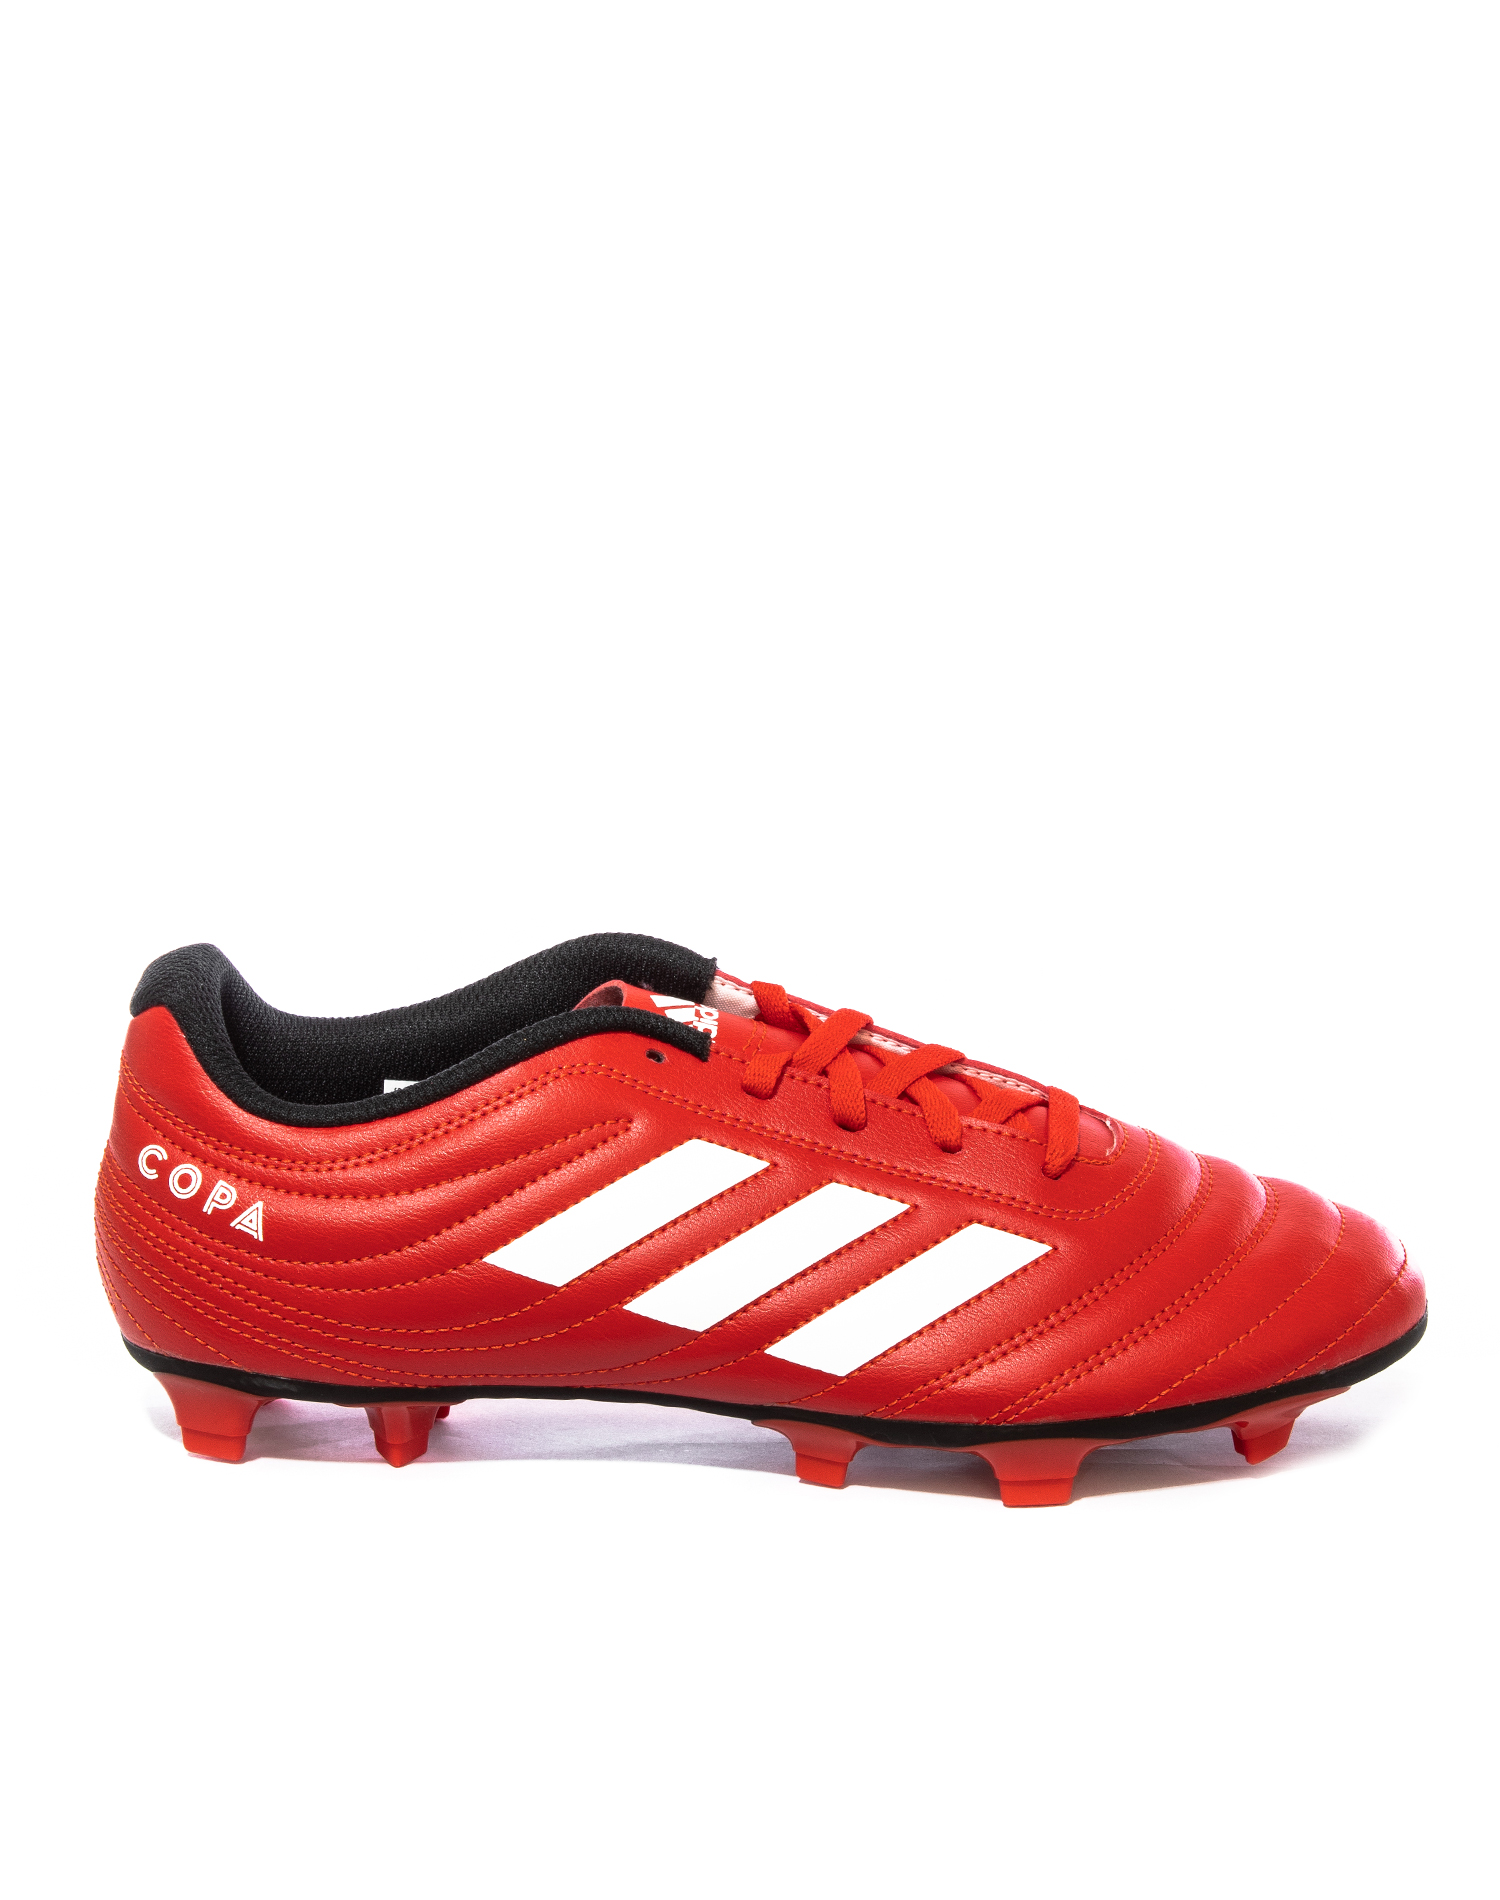 Zapatos de Futbol Adidas Copa 20.4 Rojo - Golero Sport